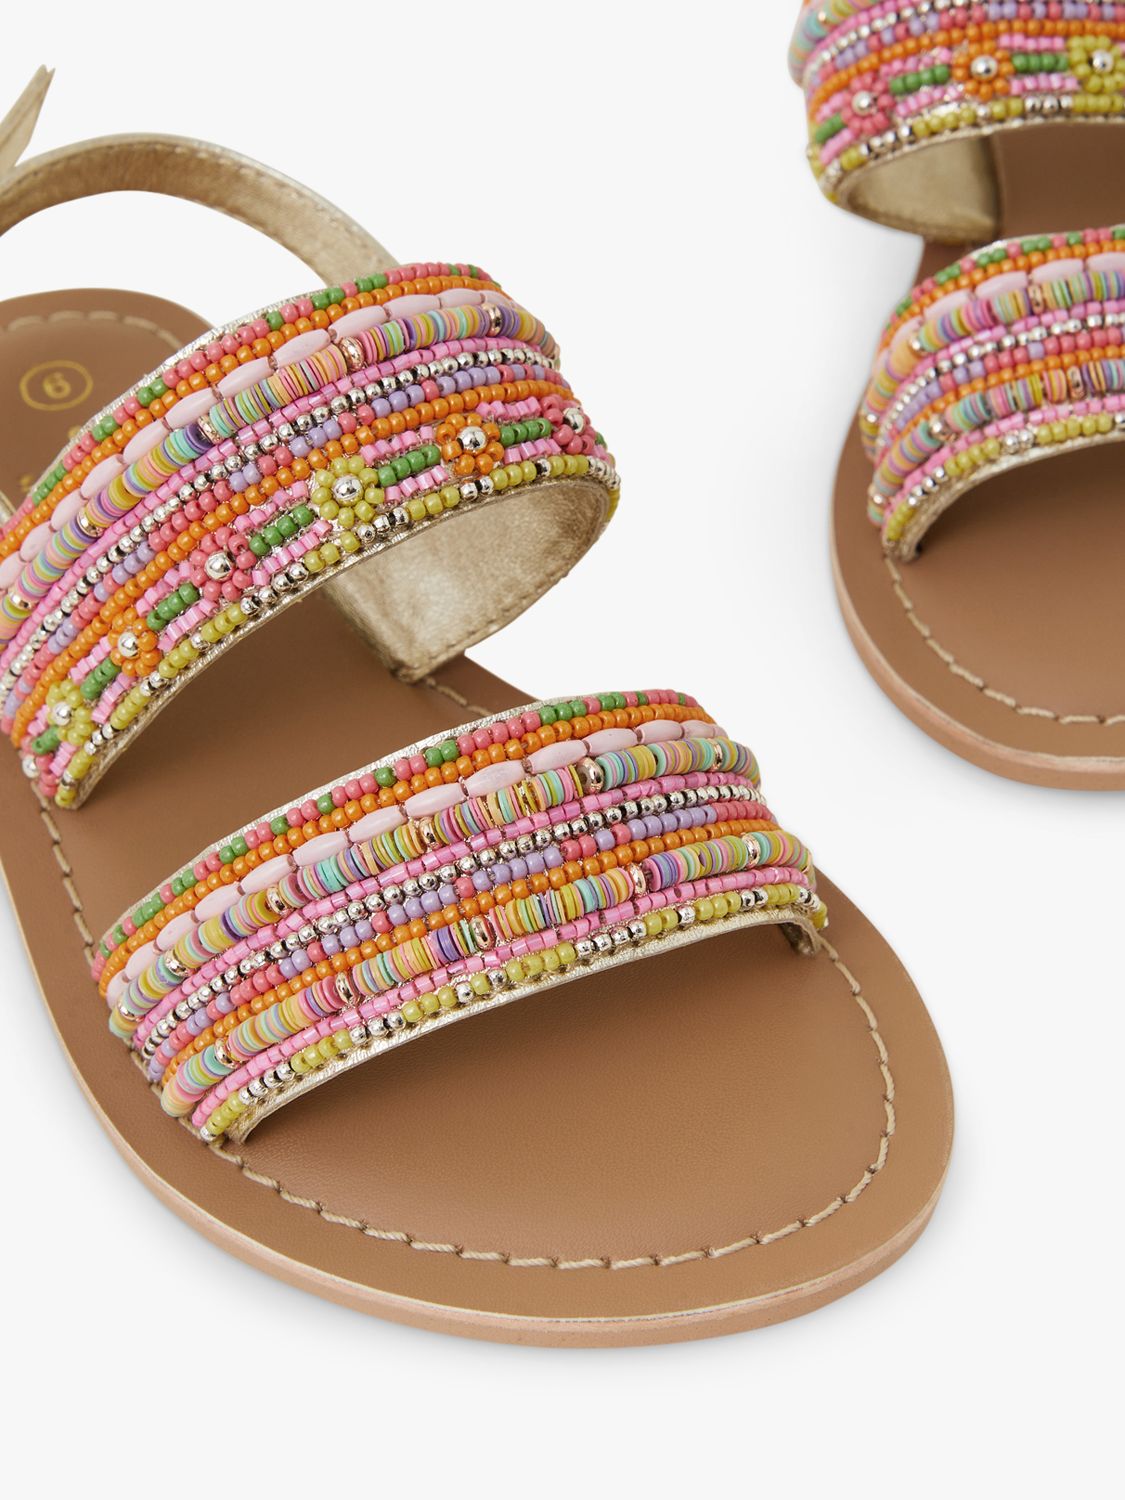 Accessorize Kids' Embellished Sandals, Brown/Multi, 7 Jnr